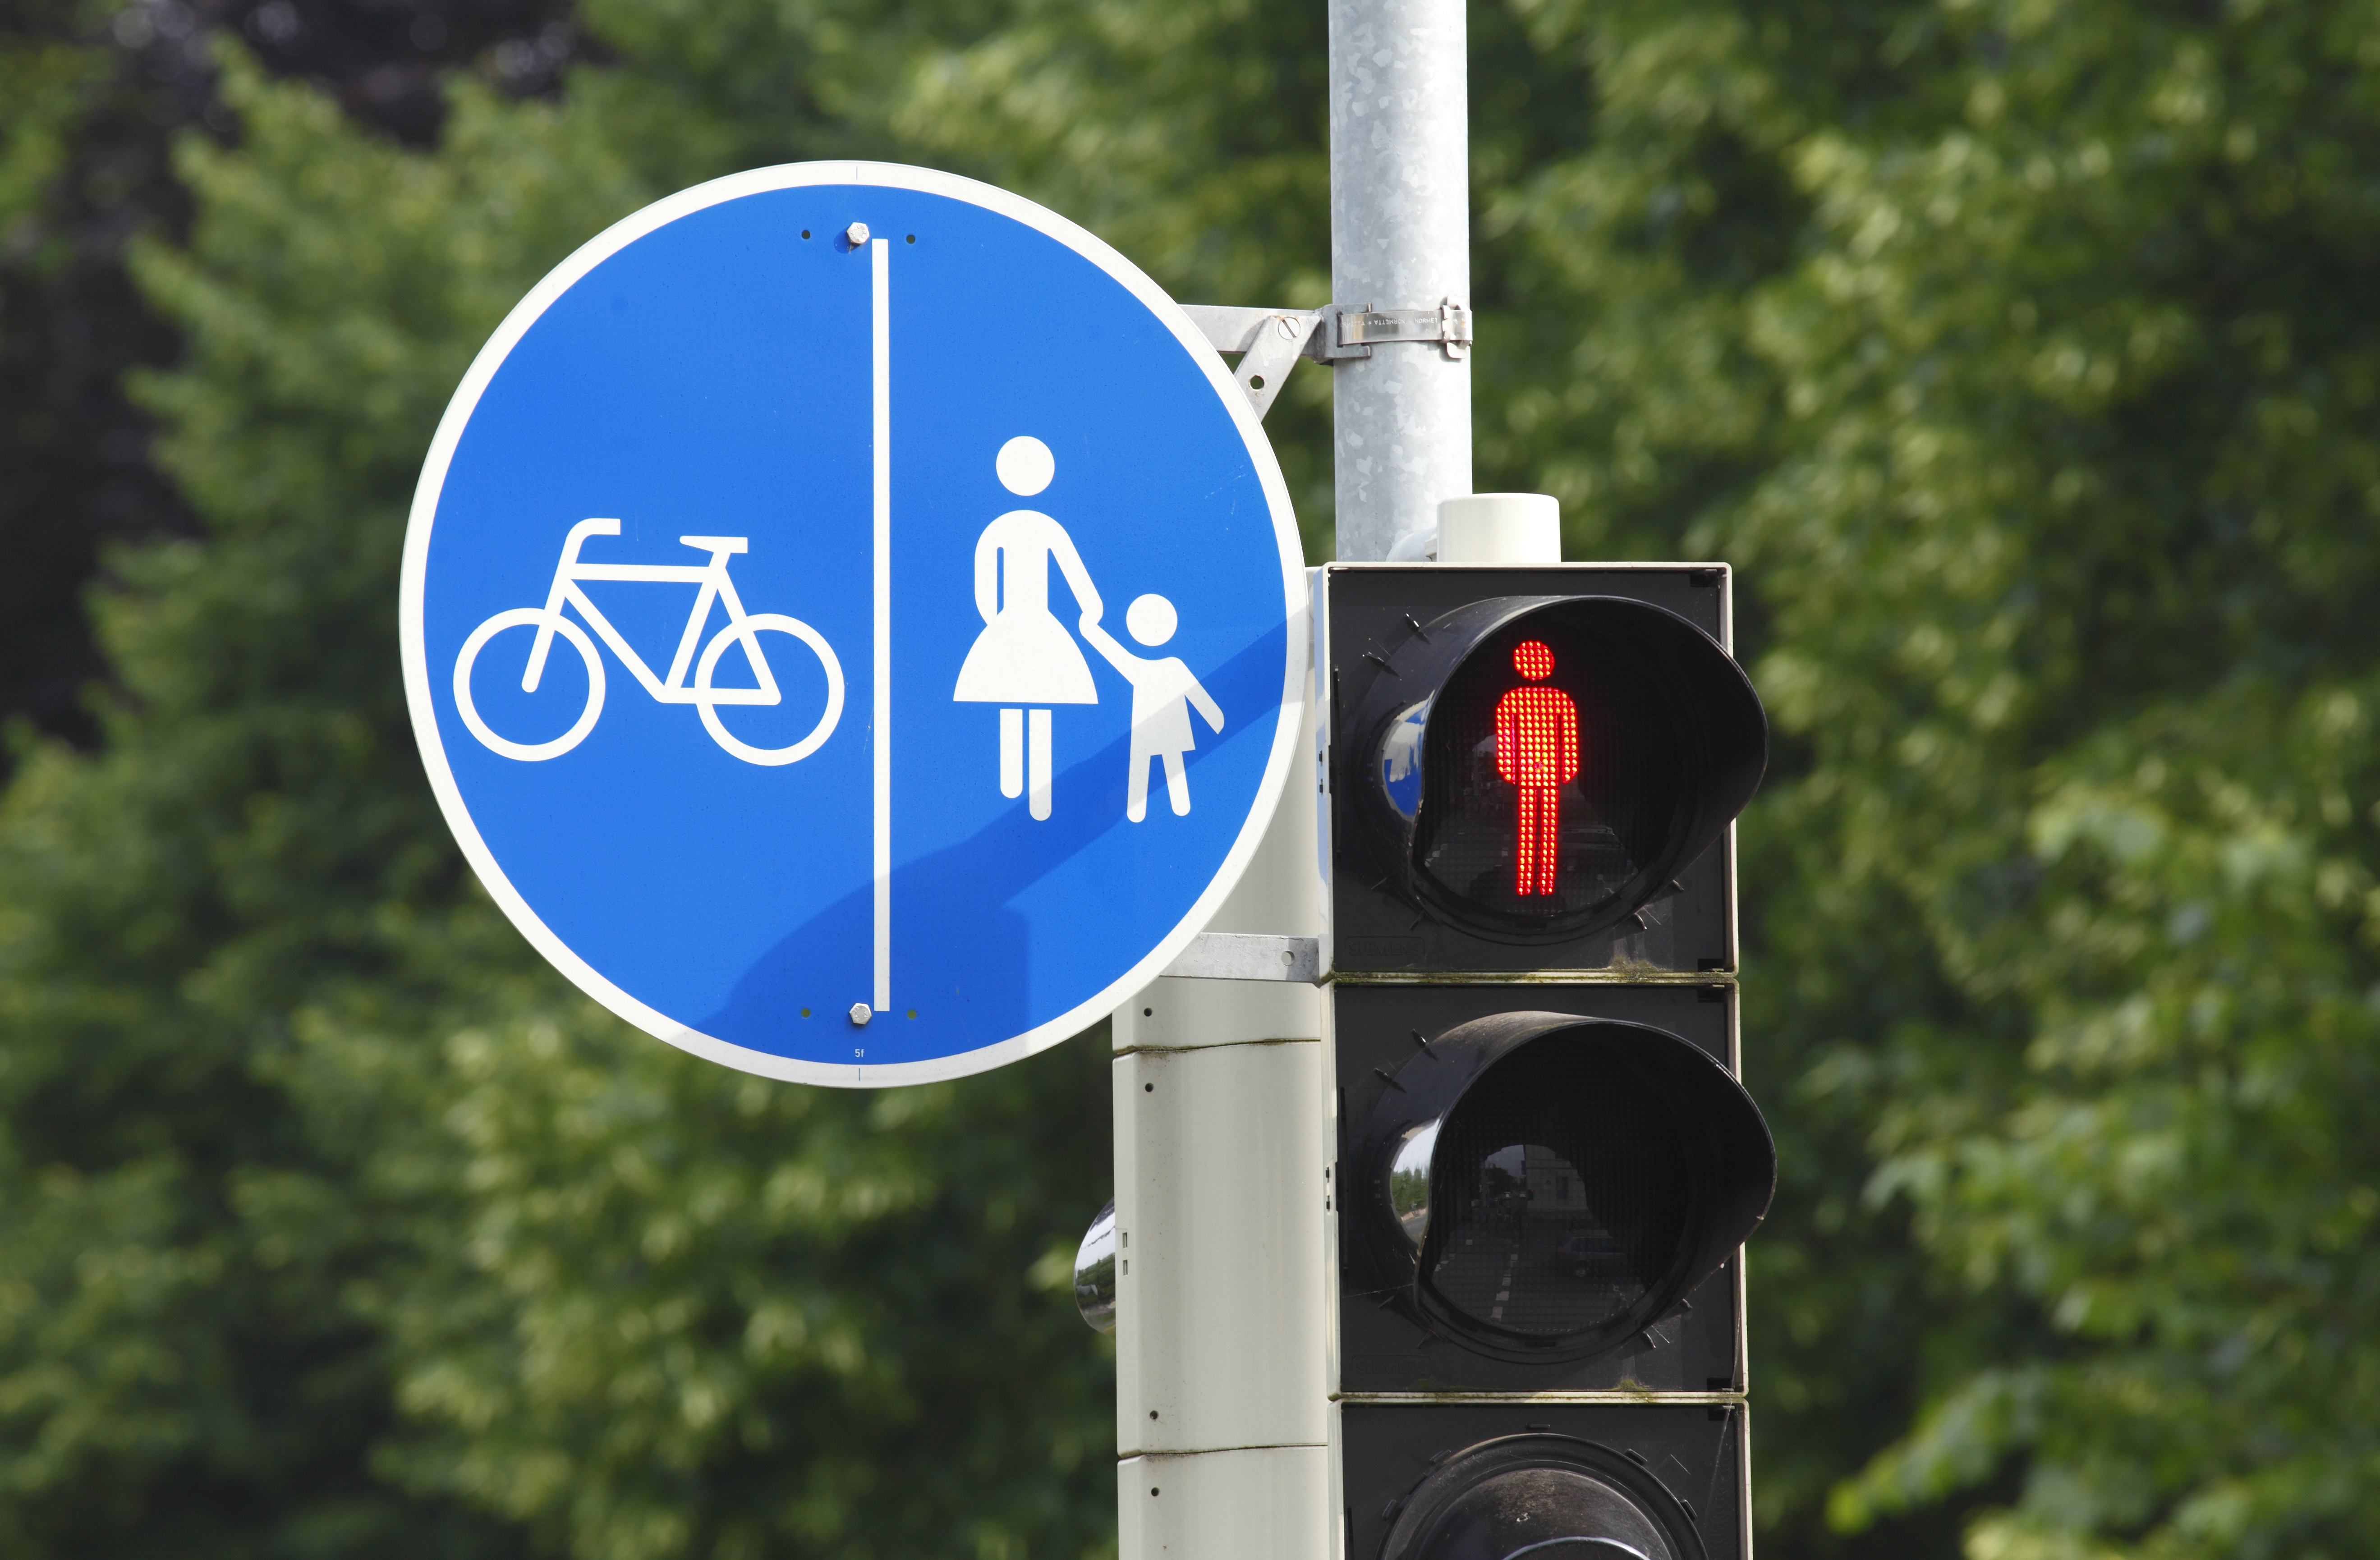 Zu sehen ist ein blaues Verkehrsschild, auf dem Fußgänger und ein Fahrrad abgebildet sind, die durch eine vertikale Linie getrennt werden.